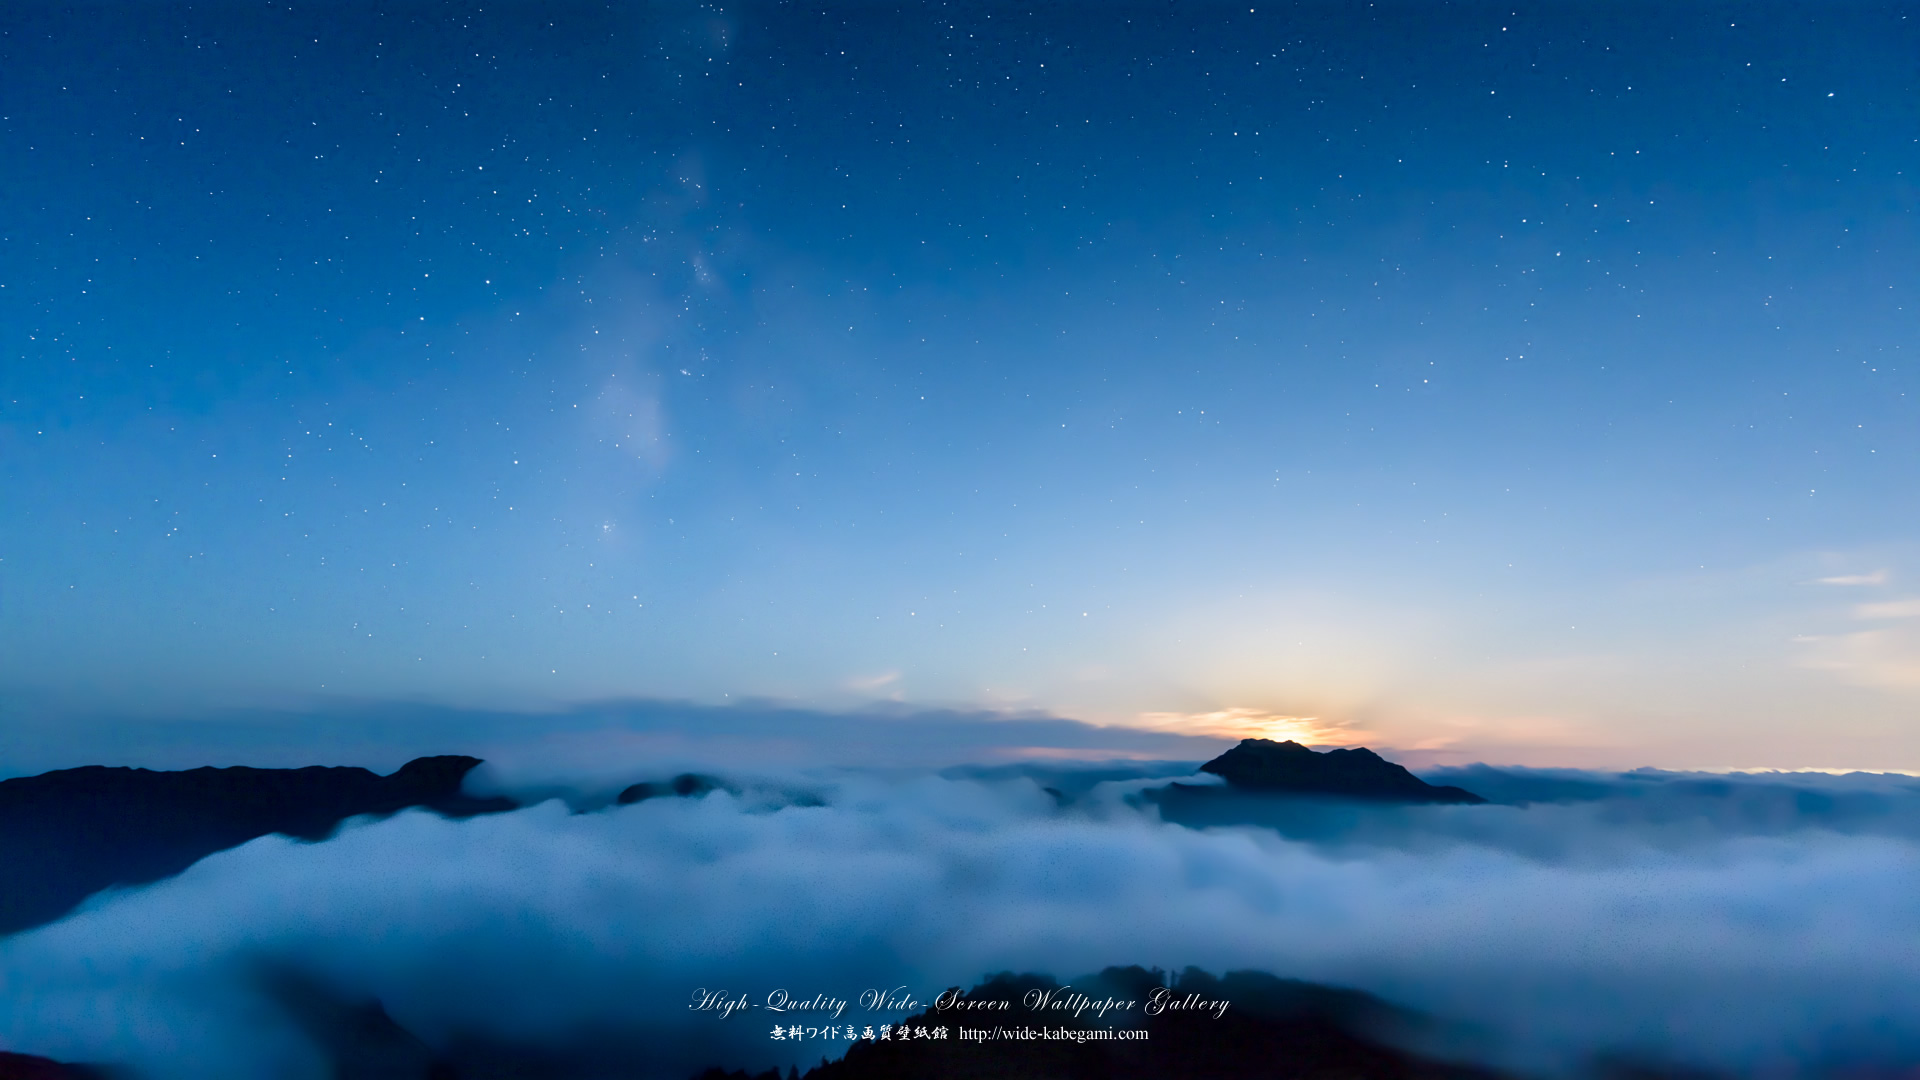 自然風景のワイド壁紙 19x1080 星瞬く雲海の朝 2 星景写真 無料ワイド高画質壁紙館